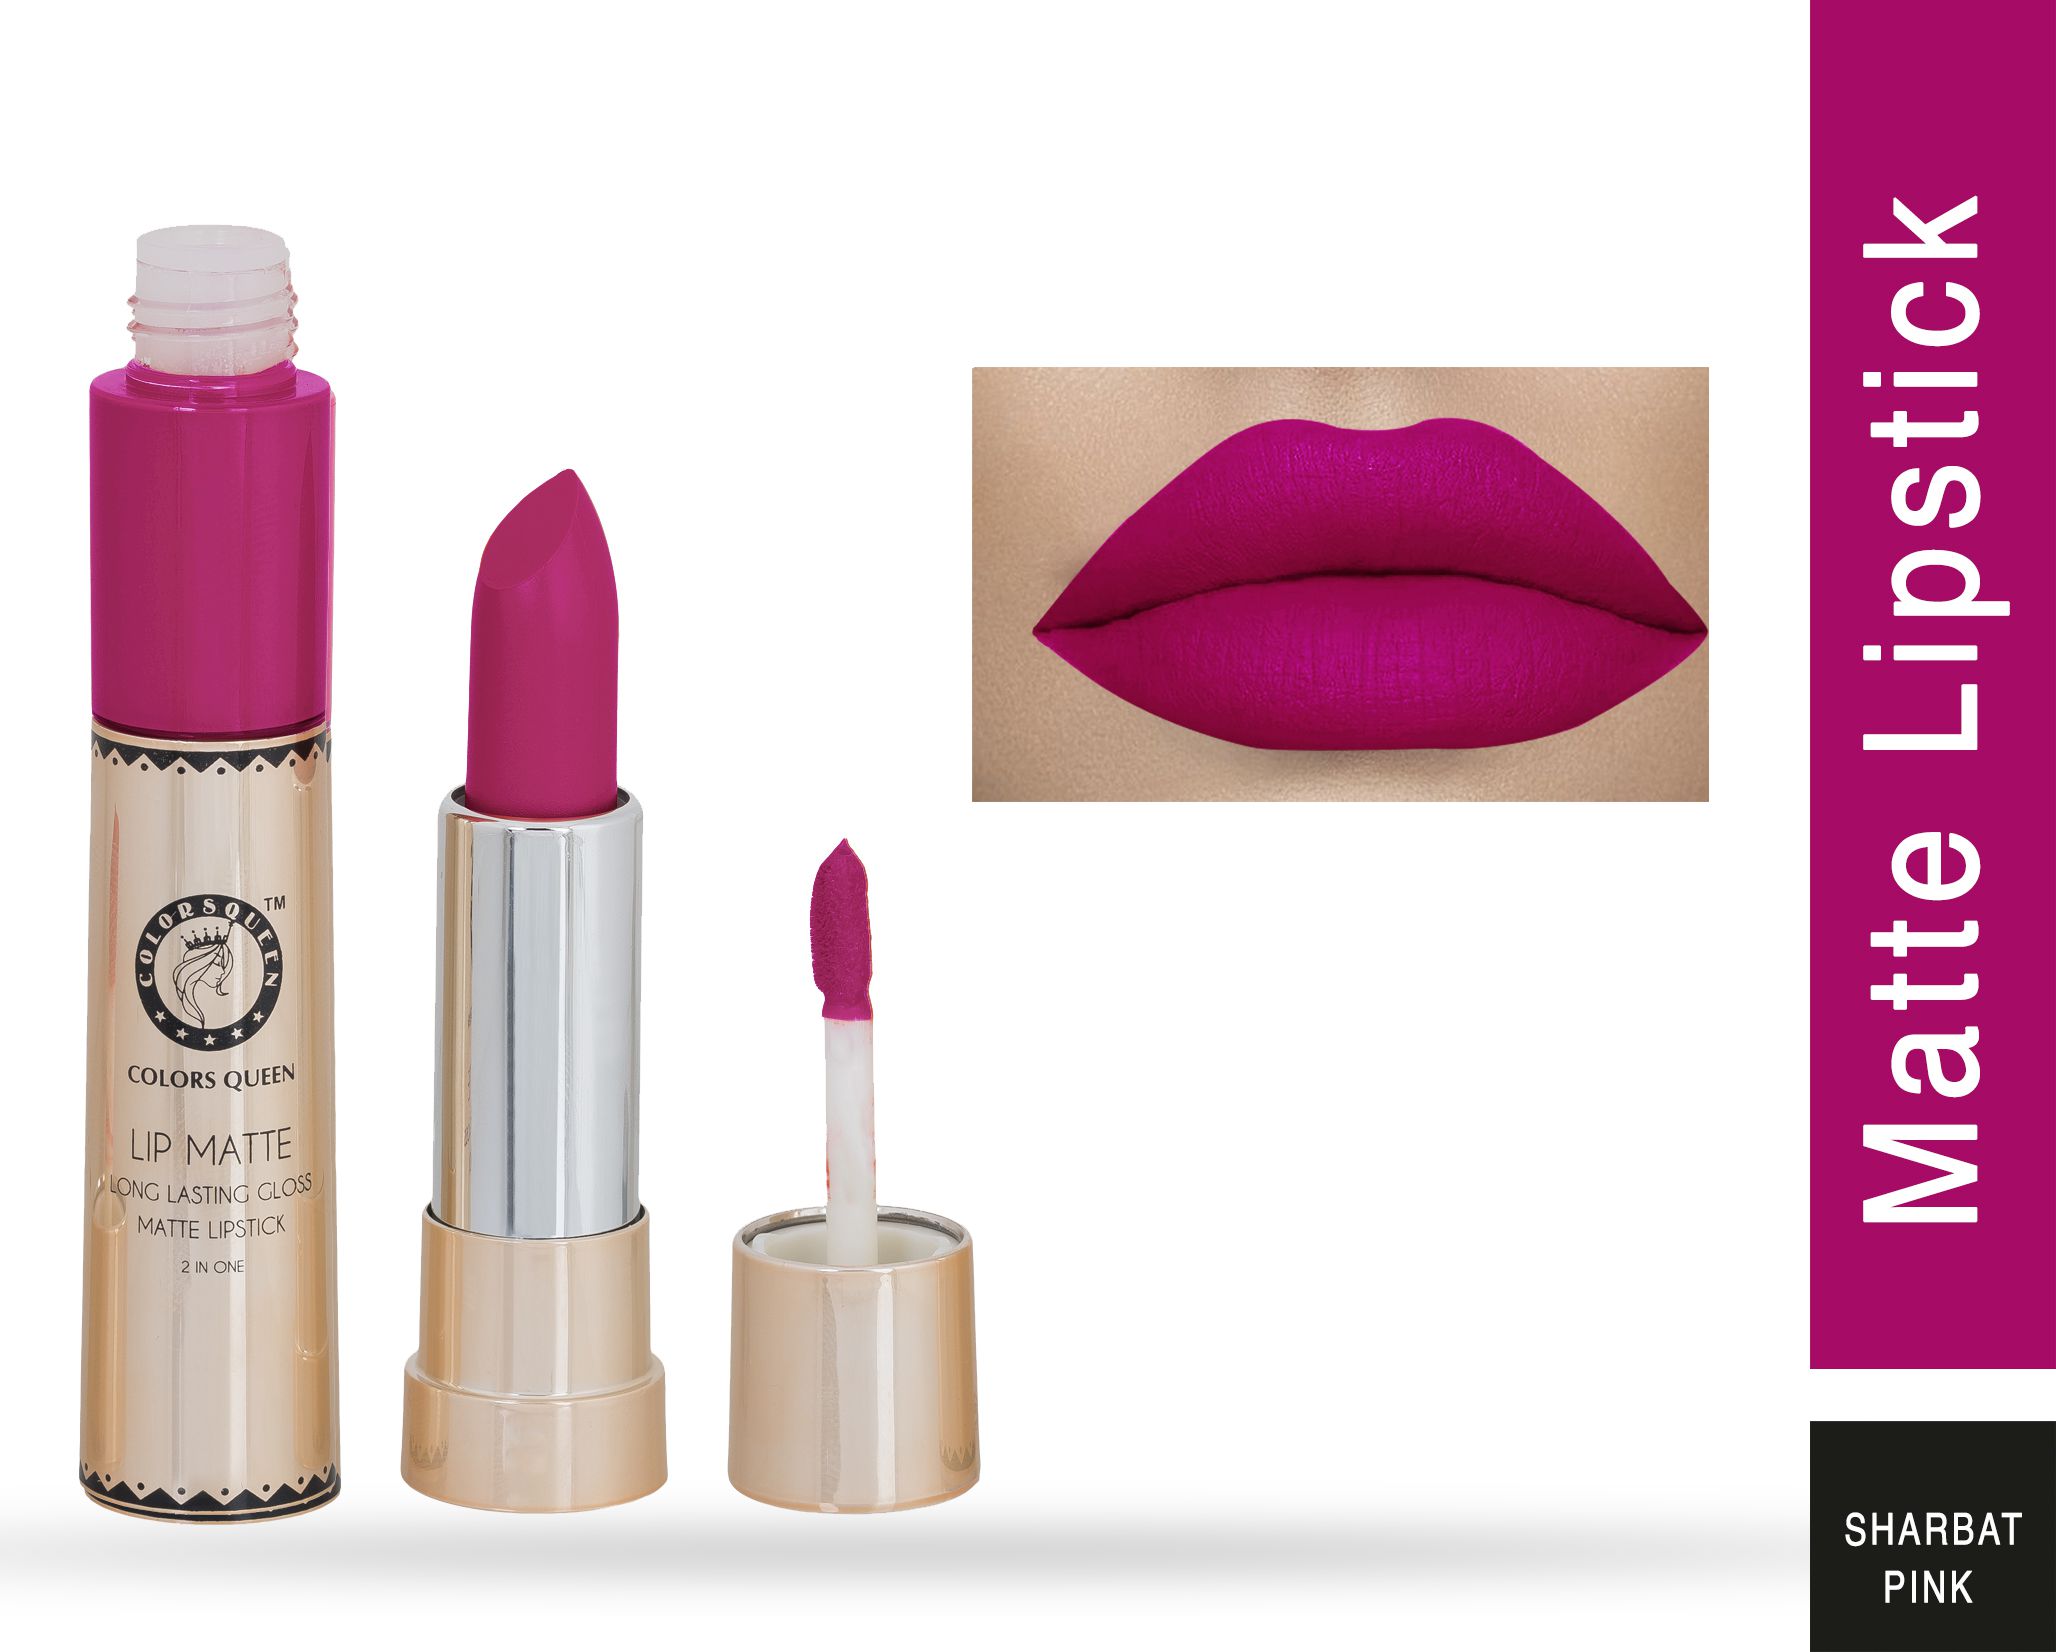     			Colors Queen Lipstick Sharbati Pink Shade - 05